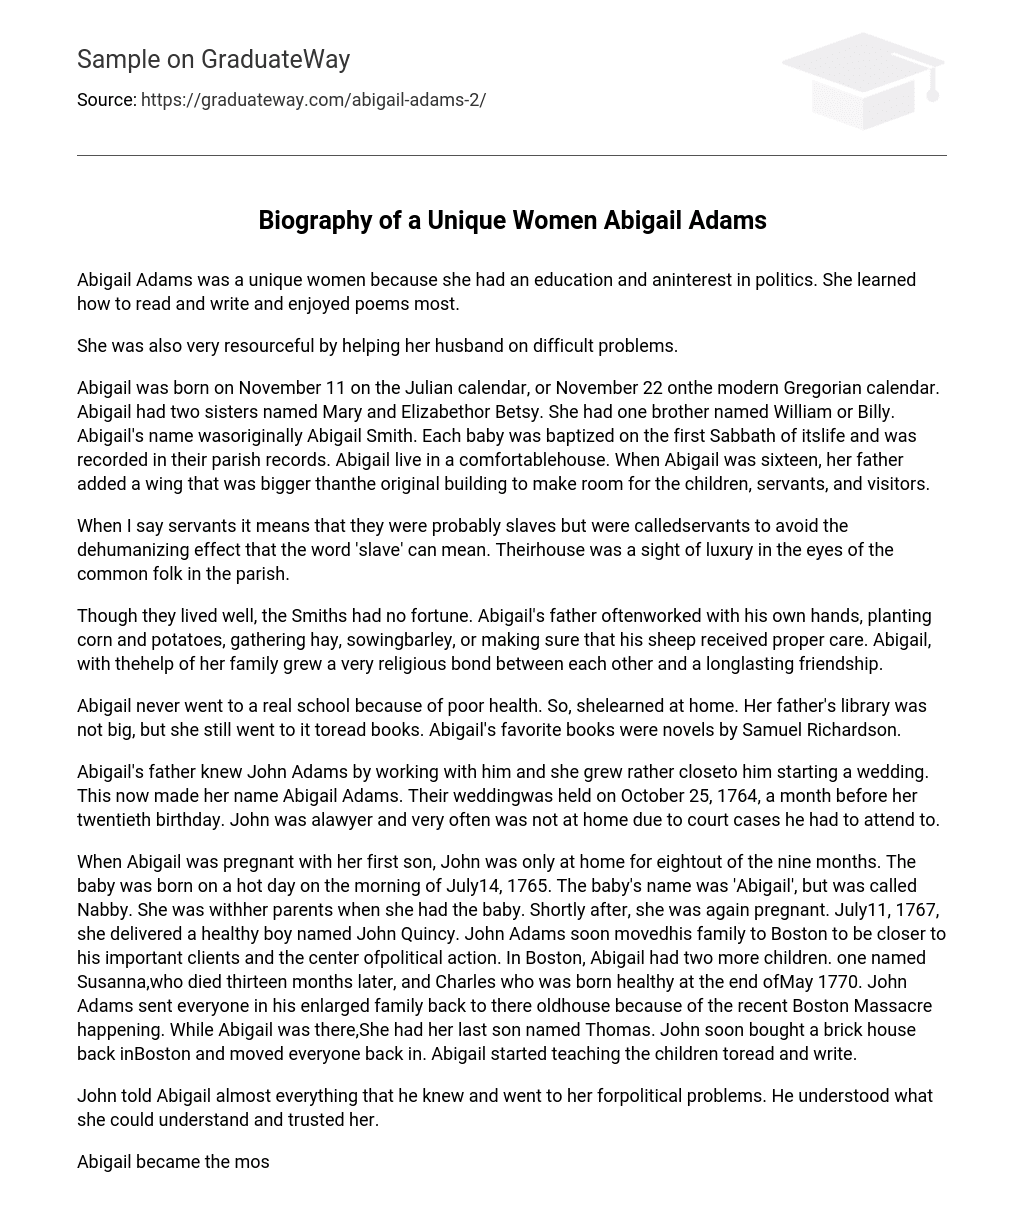 Biography of a Unique Women Abigail Adams